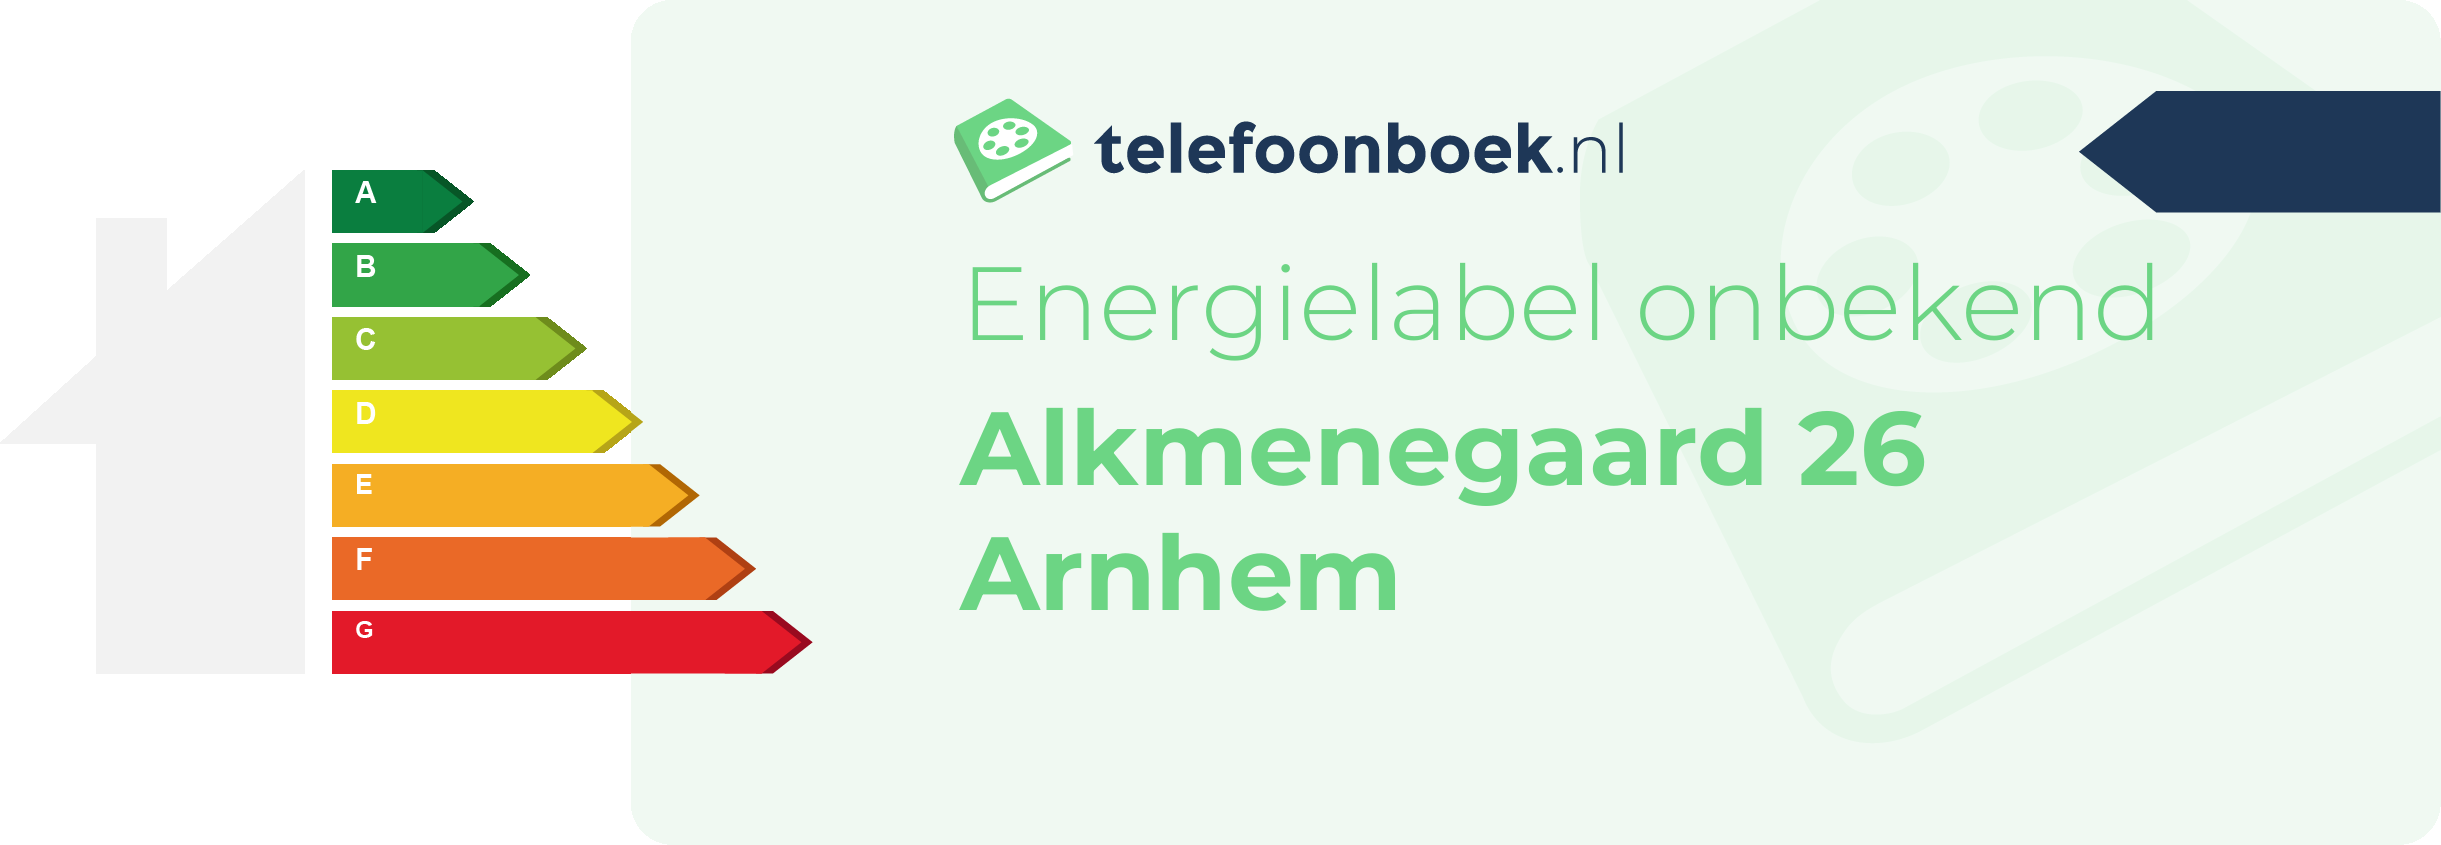 Energielabel Alkmenegaard 26 Arnhem